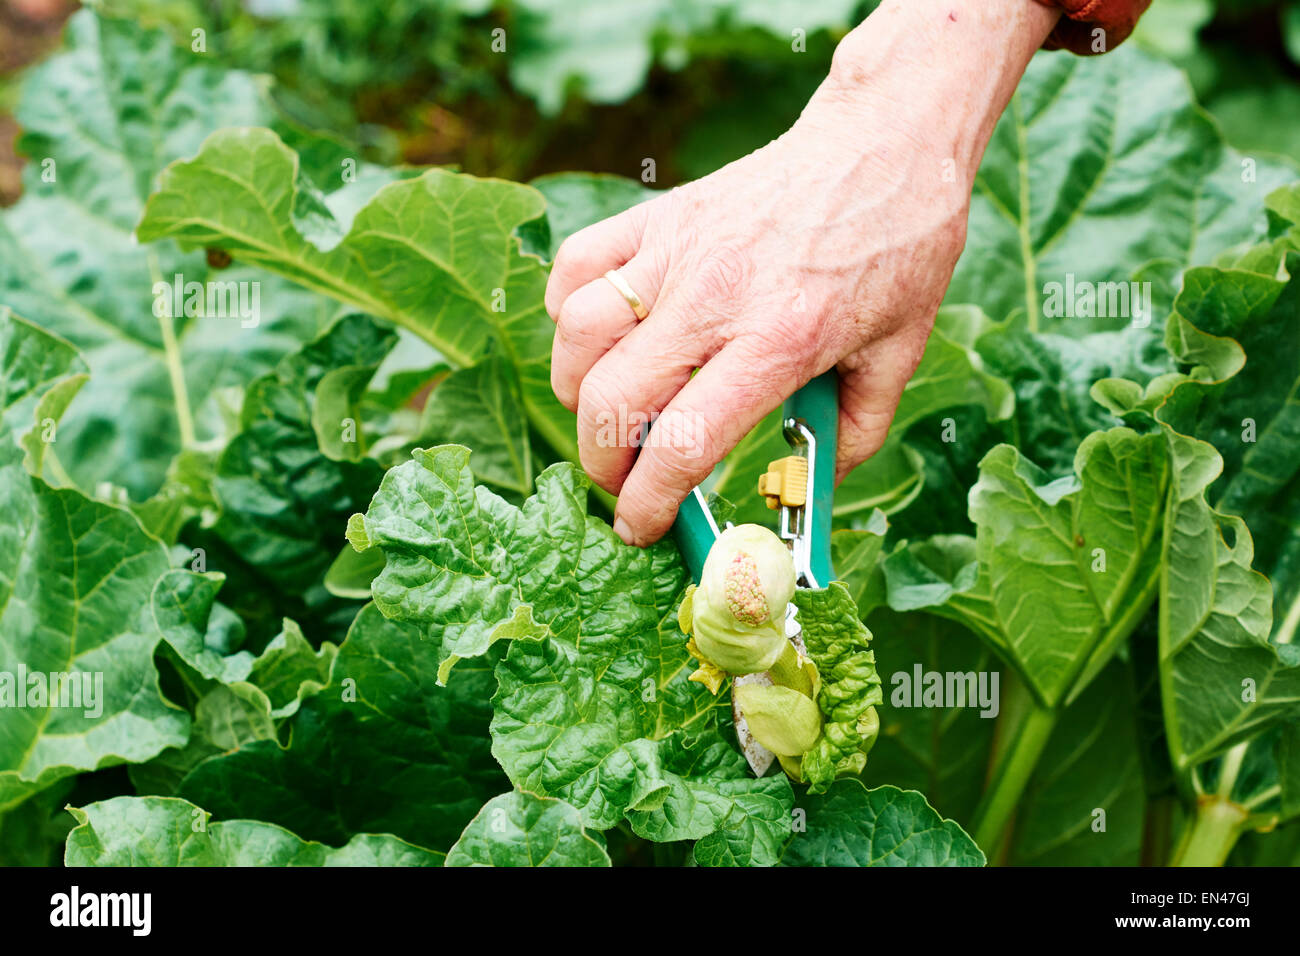 Gärtner, der den Blumenstiel einer Rhabarberpflanze schneidet, um bessere Ergebnisse zu erzielen. Stockfoto